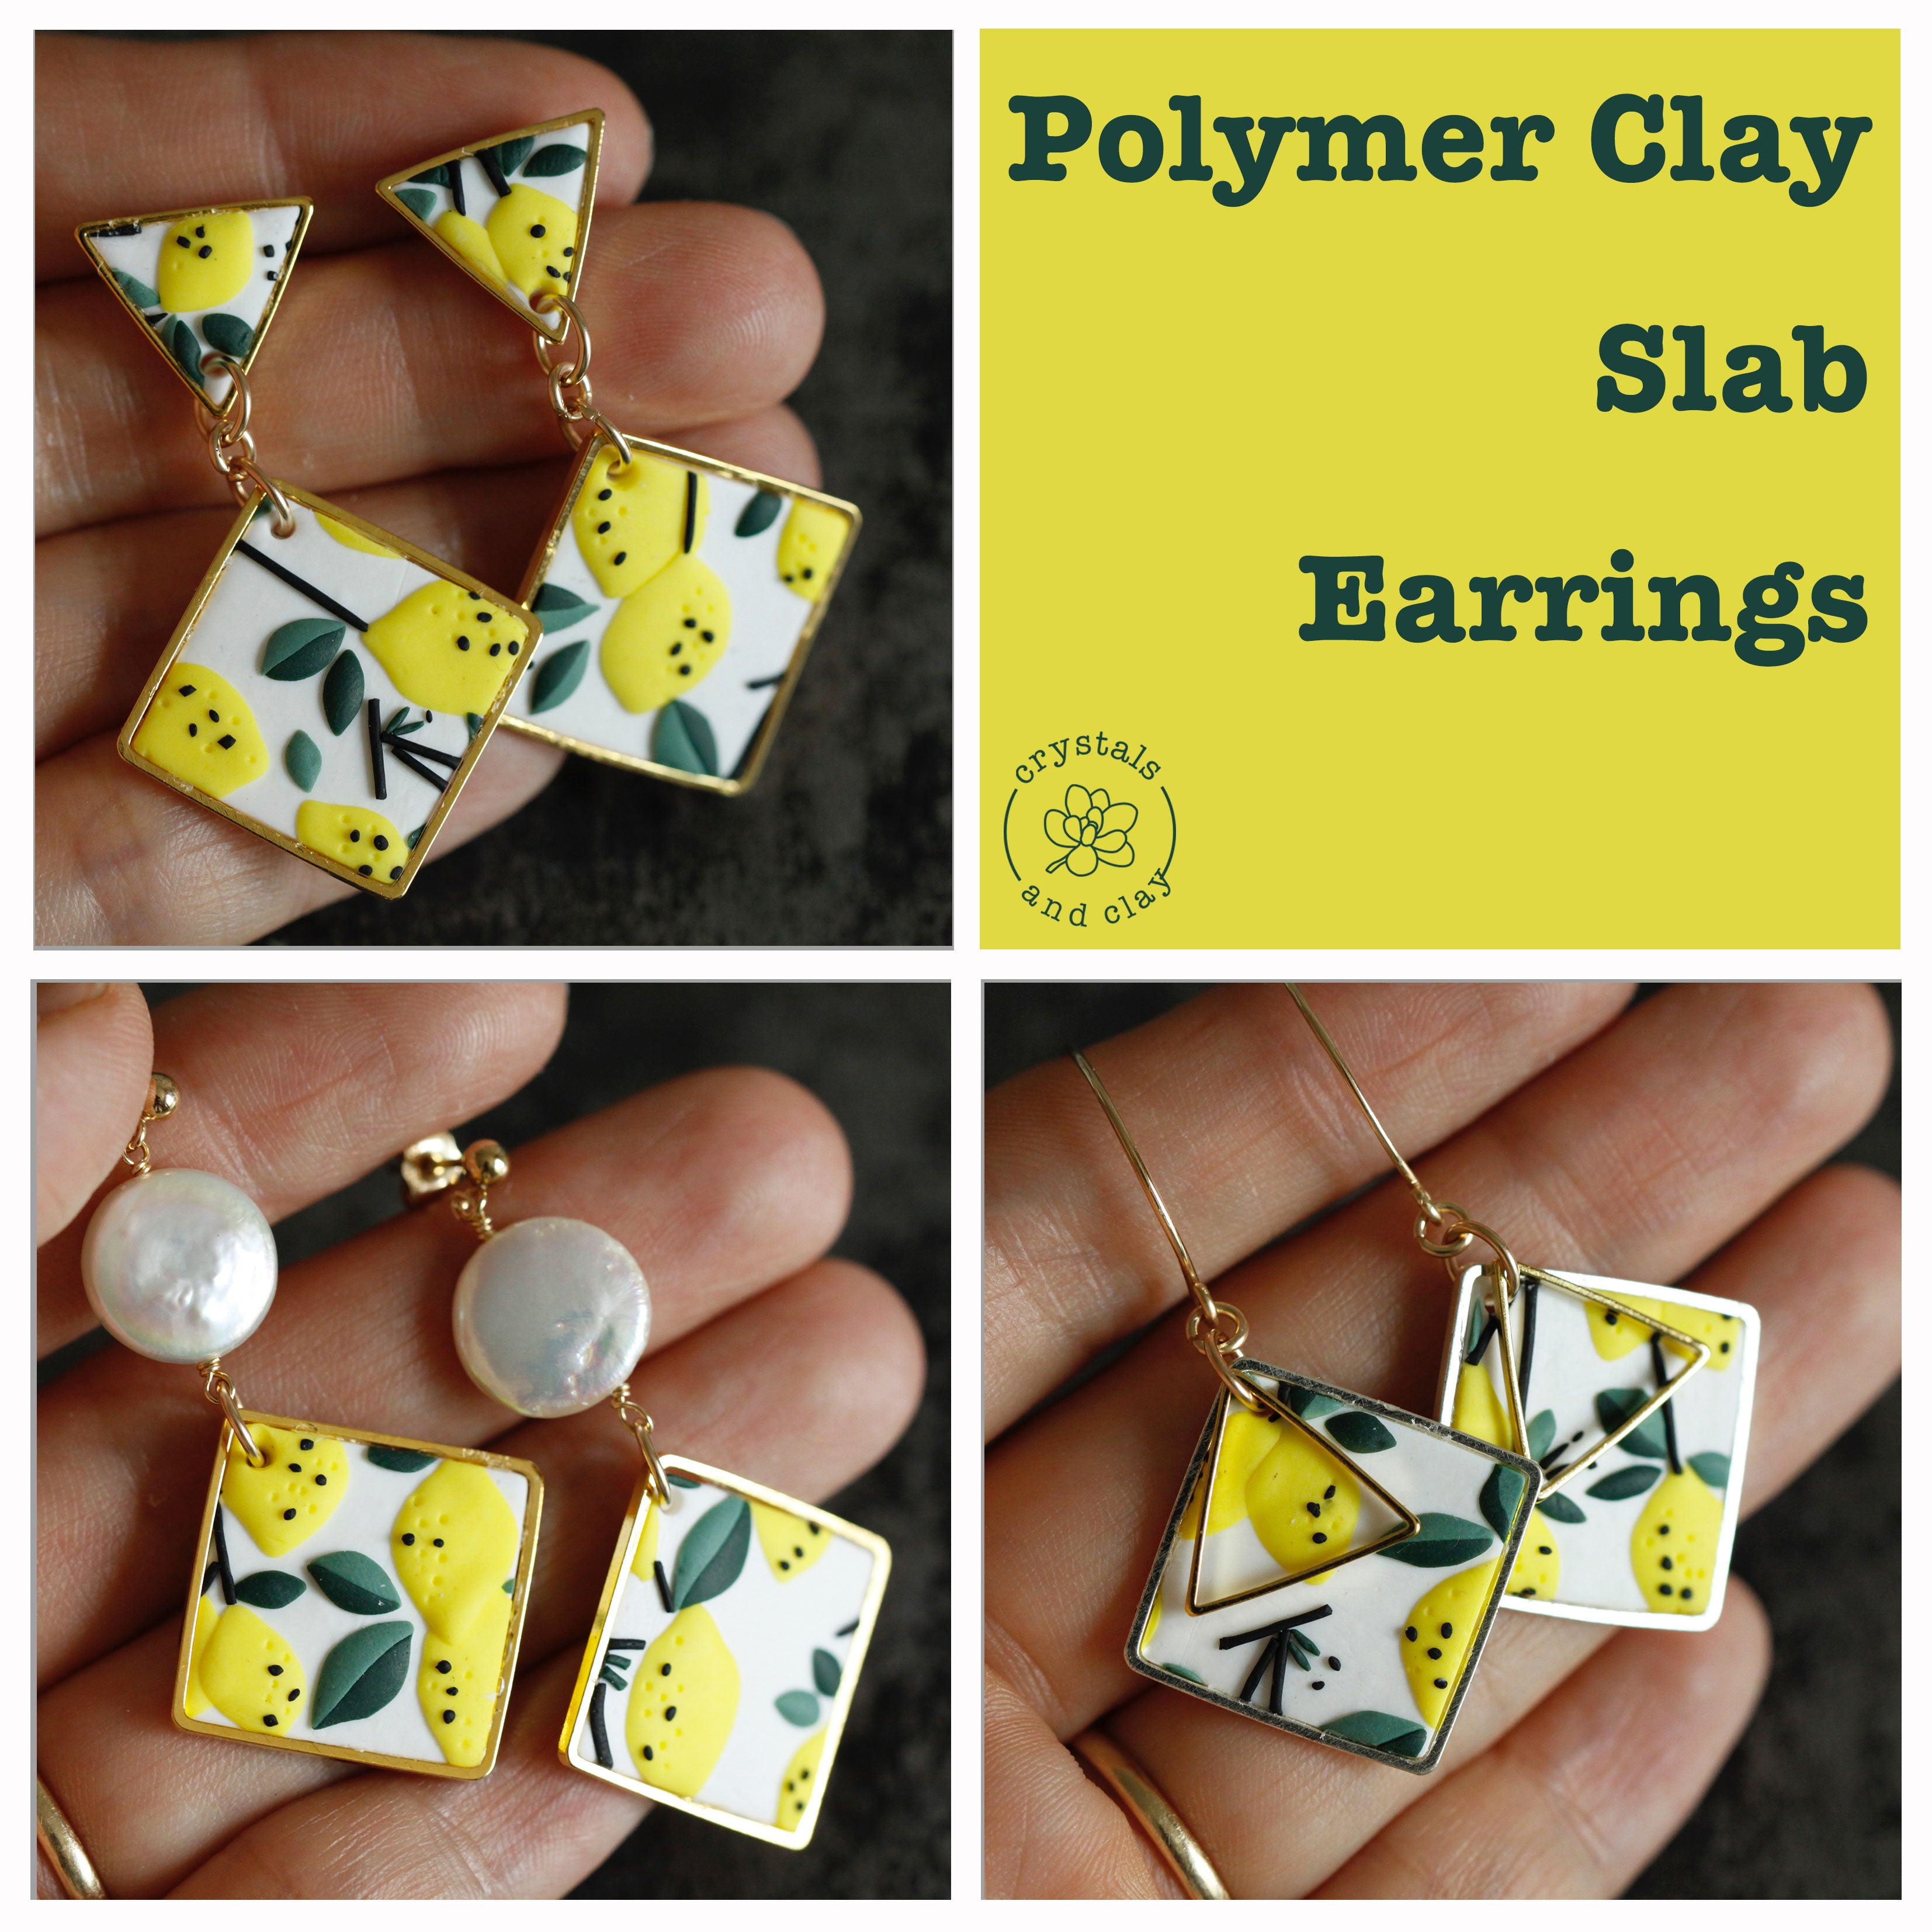 300 Polymer Clay Jewelry - Earrings ideas